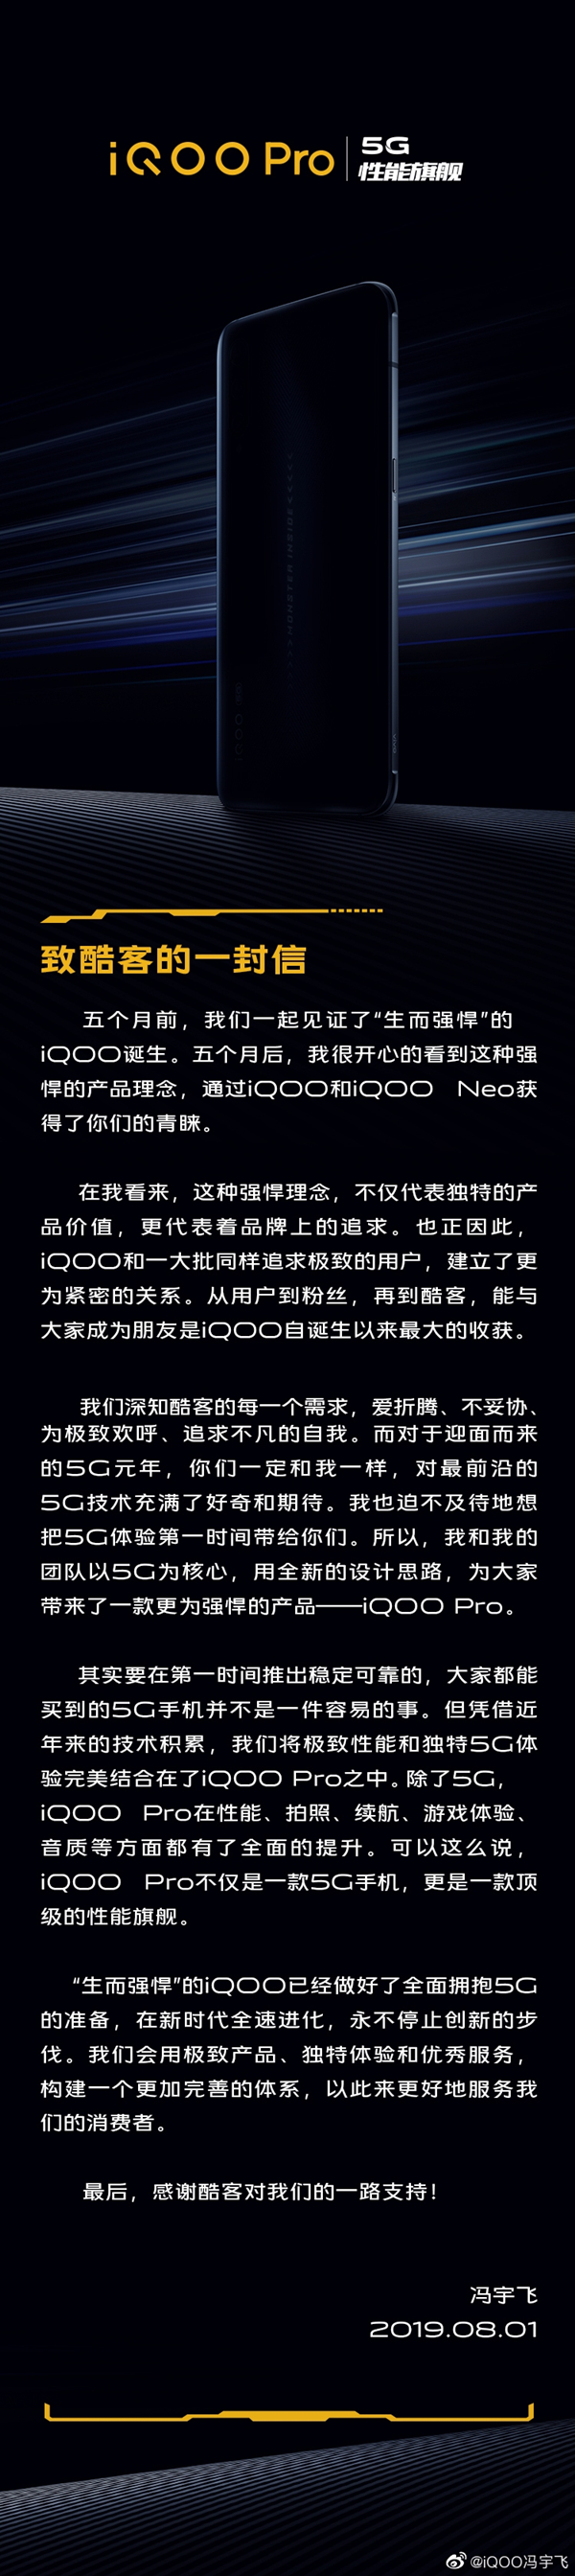 iQOO首款5G手机iQOO Pro 8月22日发布，骁龙855 Plus加X50 5G基带